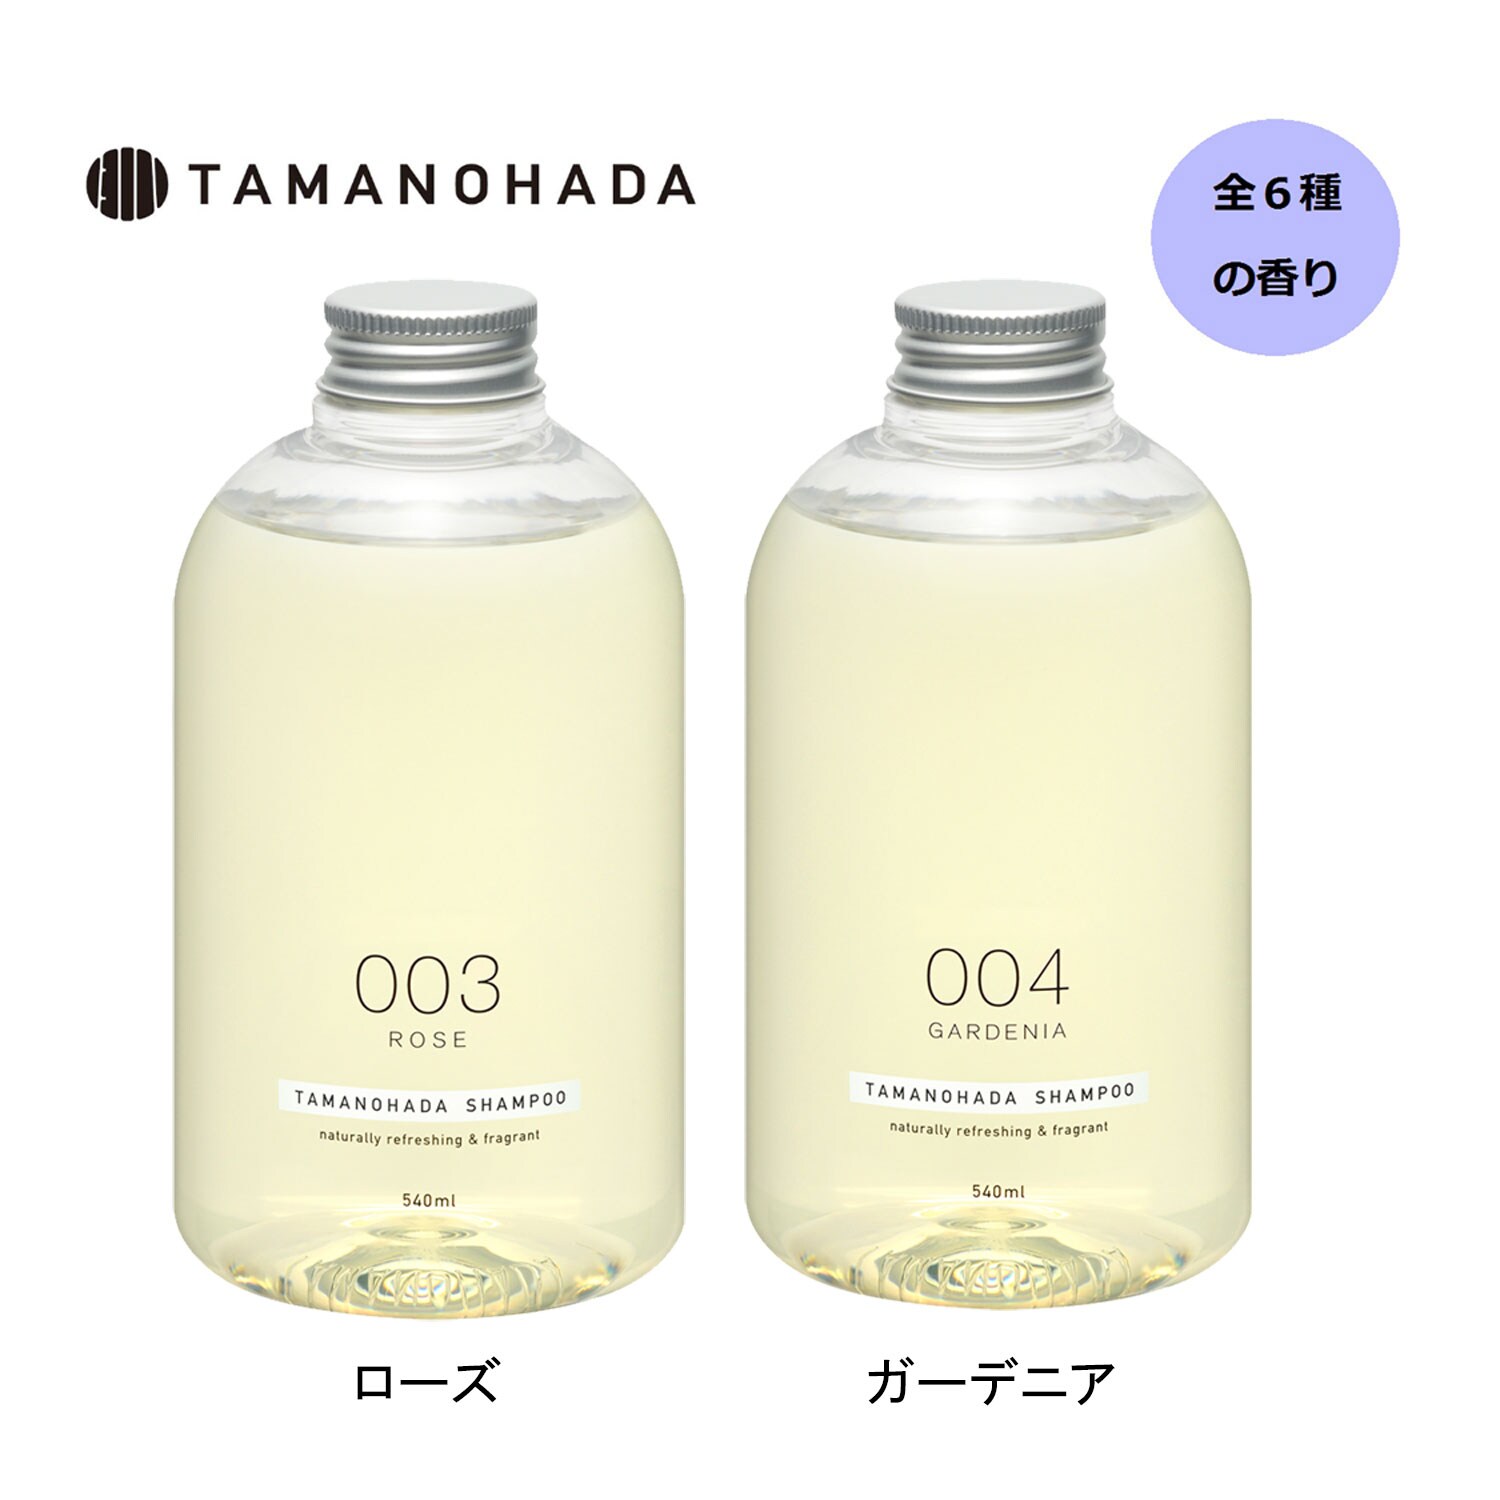 【タマノハダ/TAMANOHADA】TAMANOHADA SHAMPOO